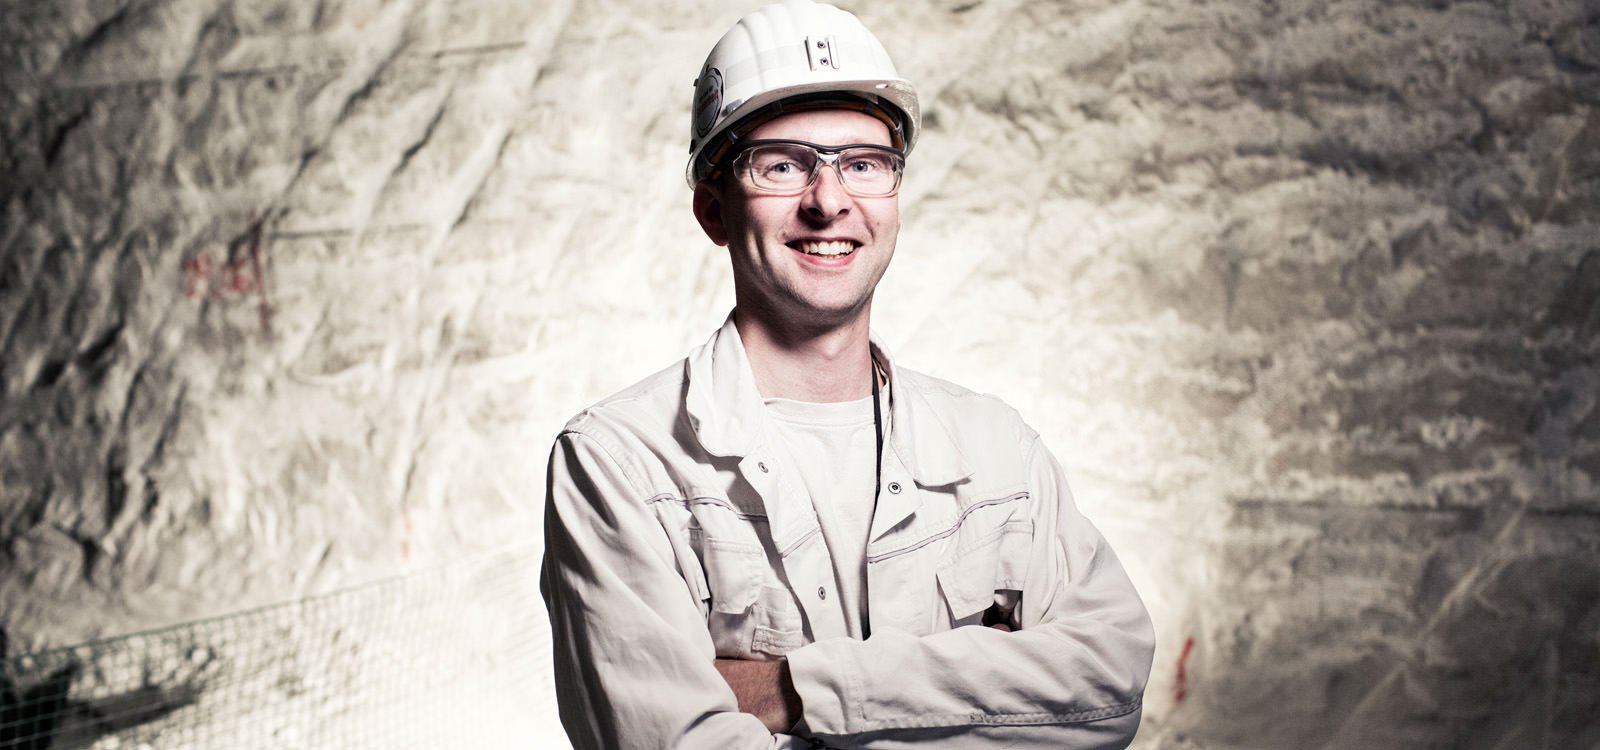 <p>Hans-Martin Müller ha sido responsable de la producción subterránea de sal en la mina de esco, en Bernburg, Alemania, los últimos dos años.</p>
